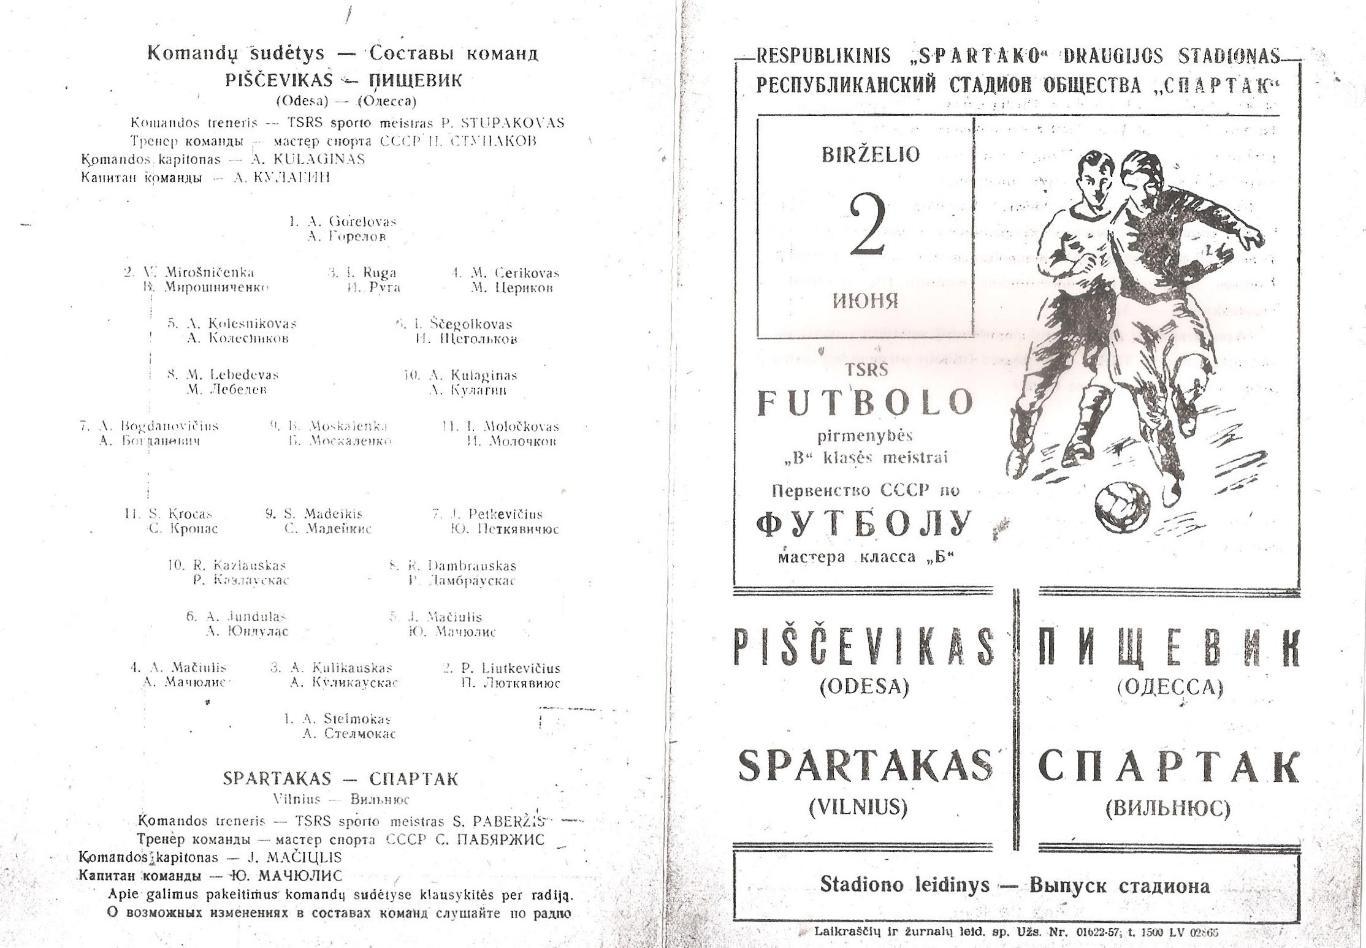 Спартак Вильнюс - Пищевик Одесса 2.06.1957г. (копия)